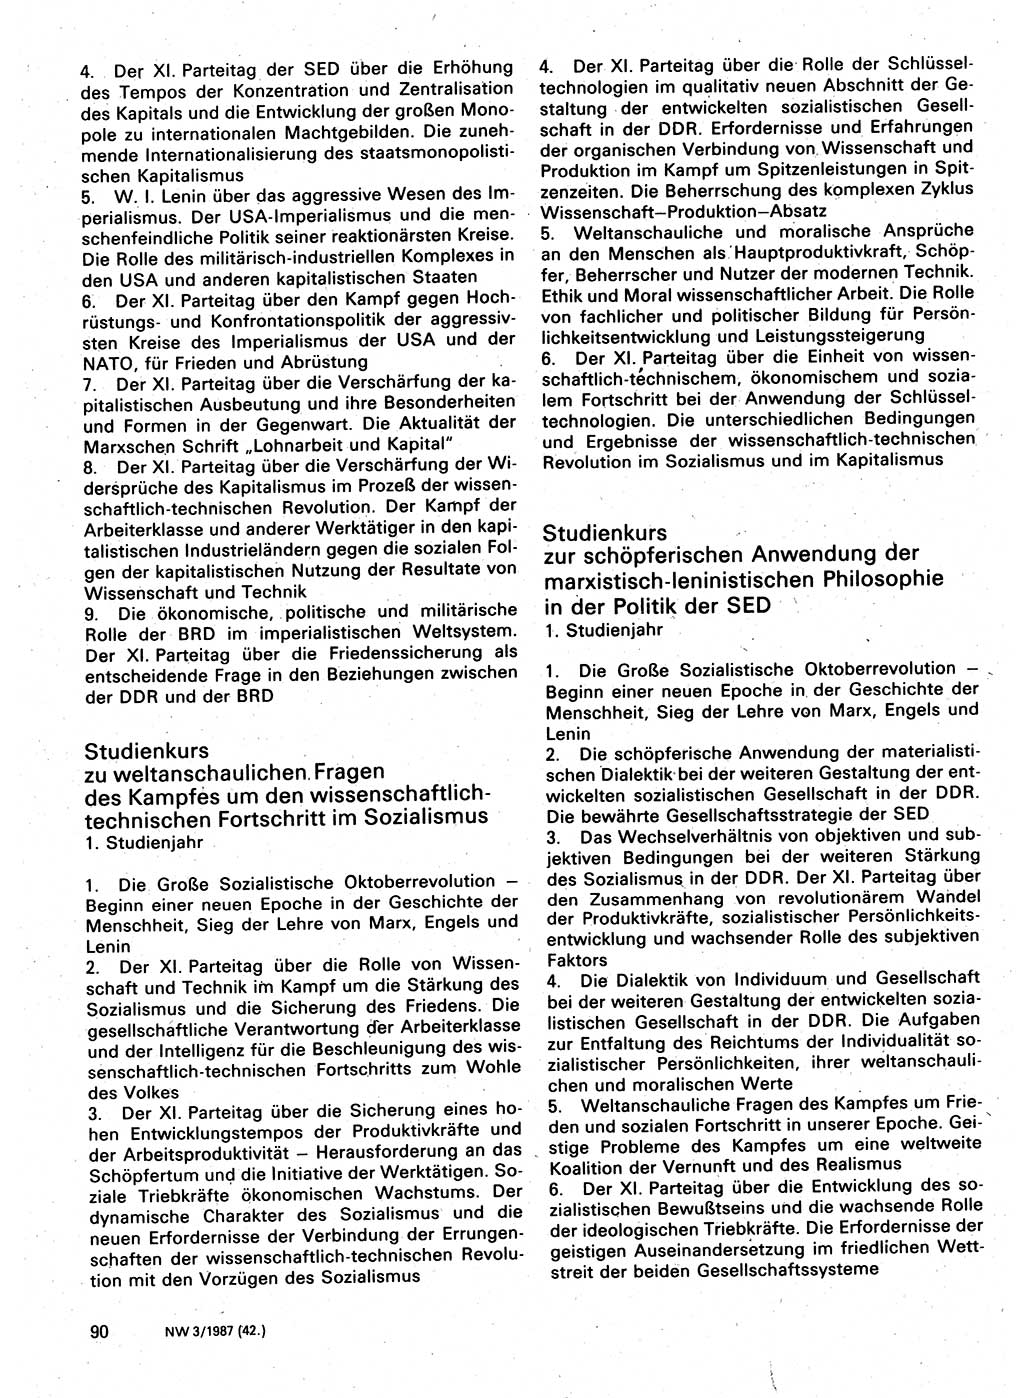 Neuer Weg (NW), Organ des Zentralkomitees (ZK) der SED (Sozialistische Einheitspartei Deutschlands) für Fragen des Parteilebens, 42. Jahrgang [Deutsche Demokratische Republik (DDR)] 1987, Seite 90 (NW ZK SED DDR 1987, S. 90)